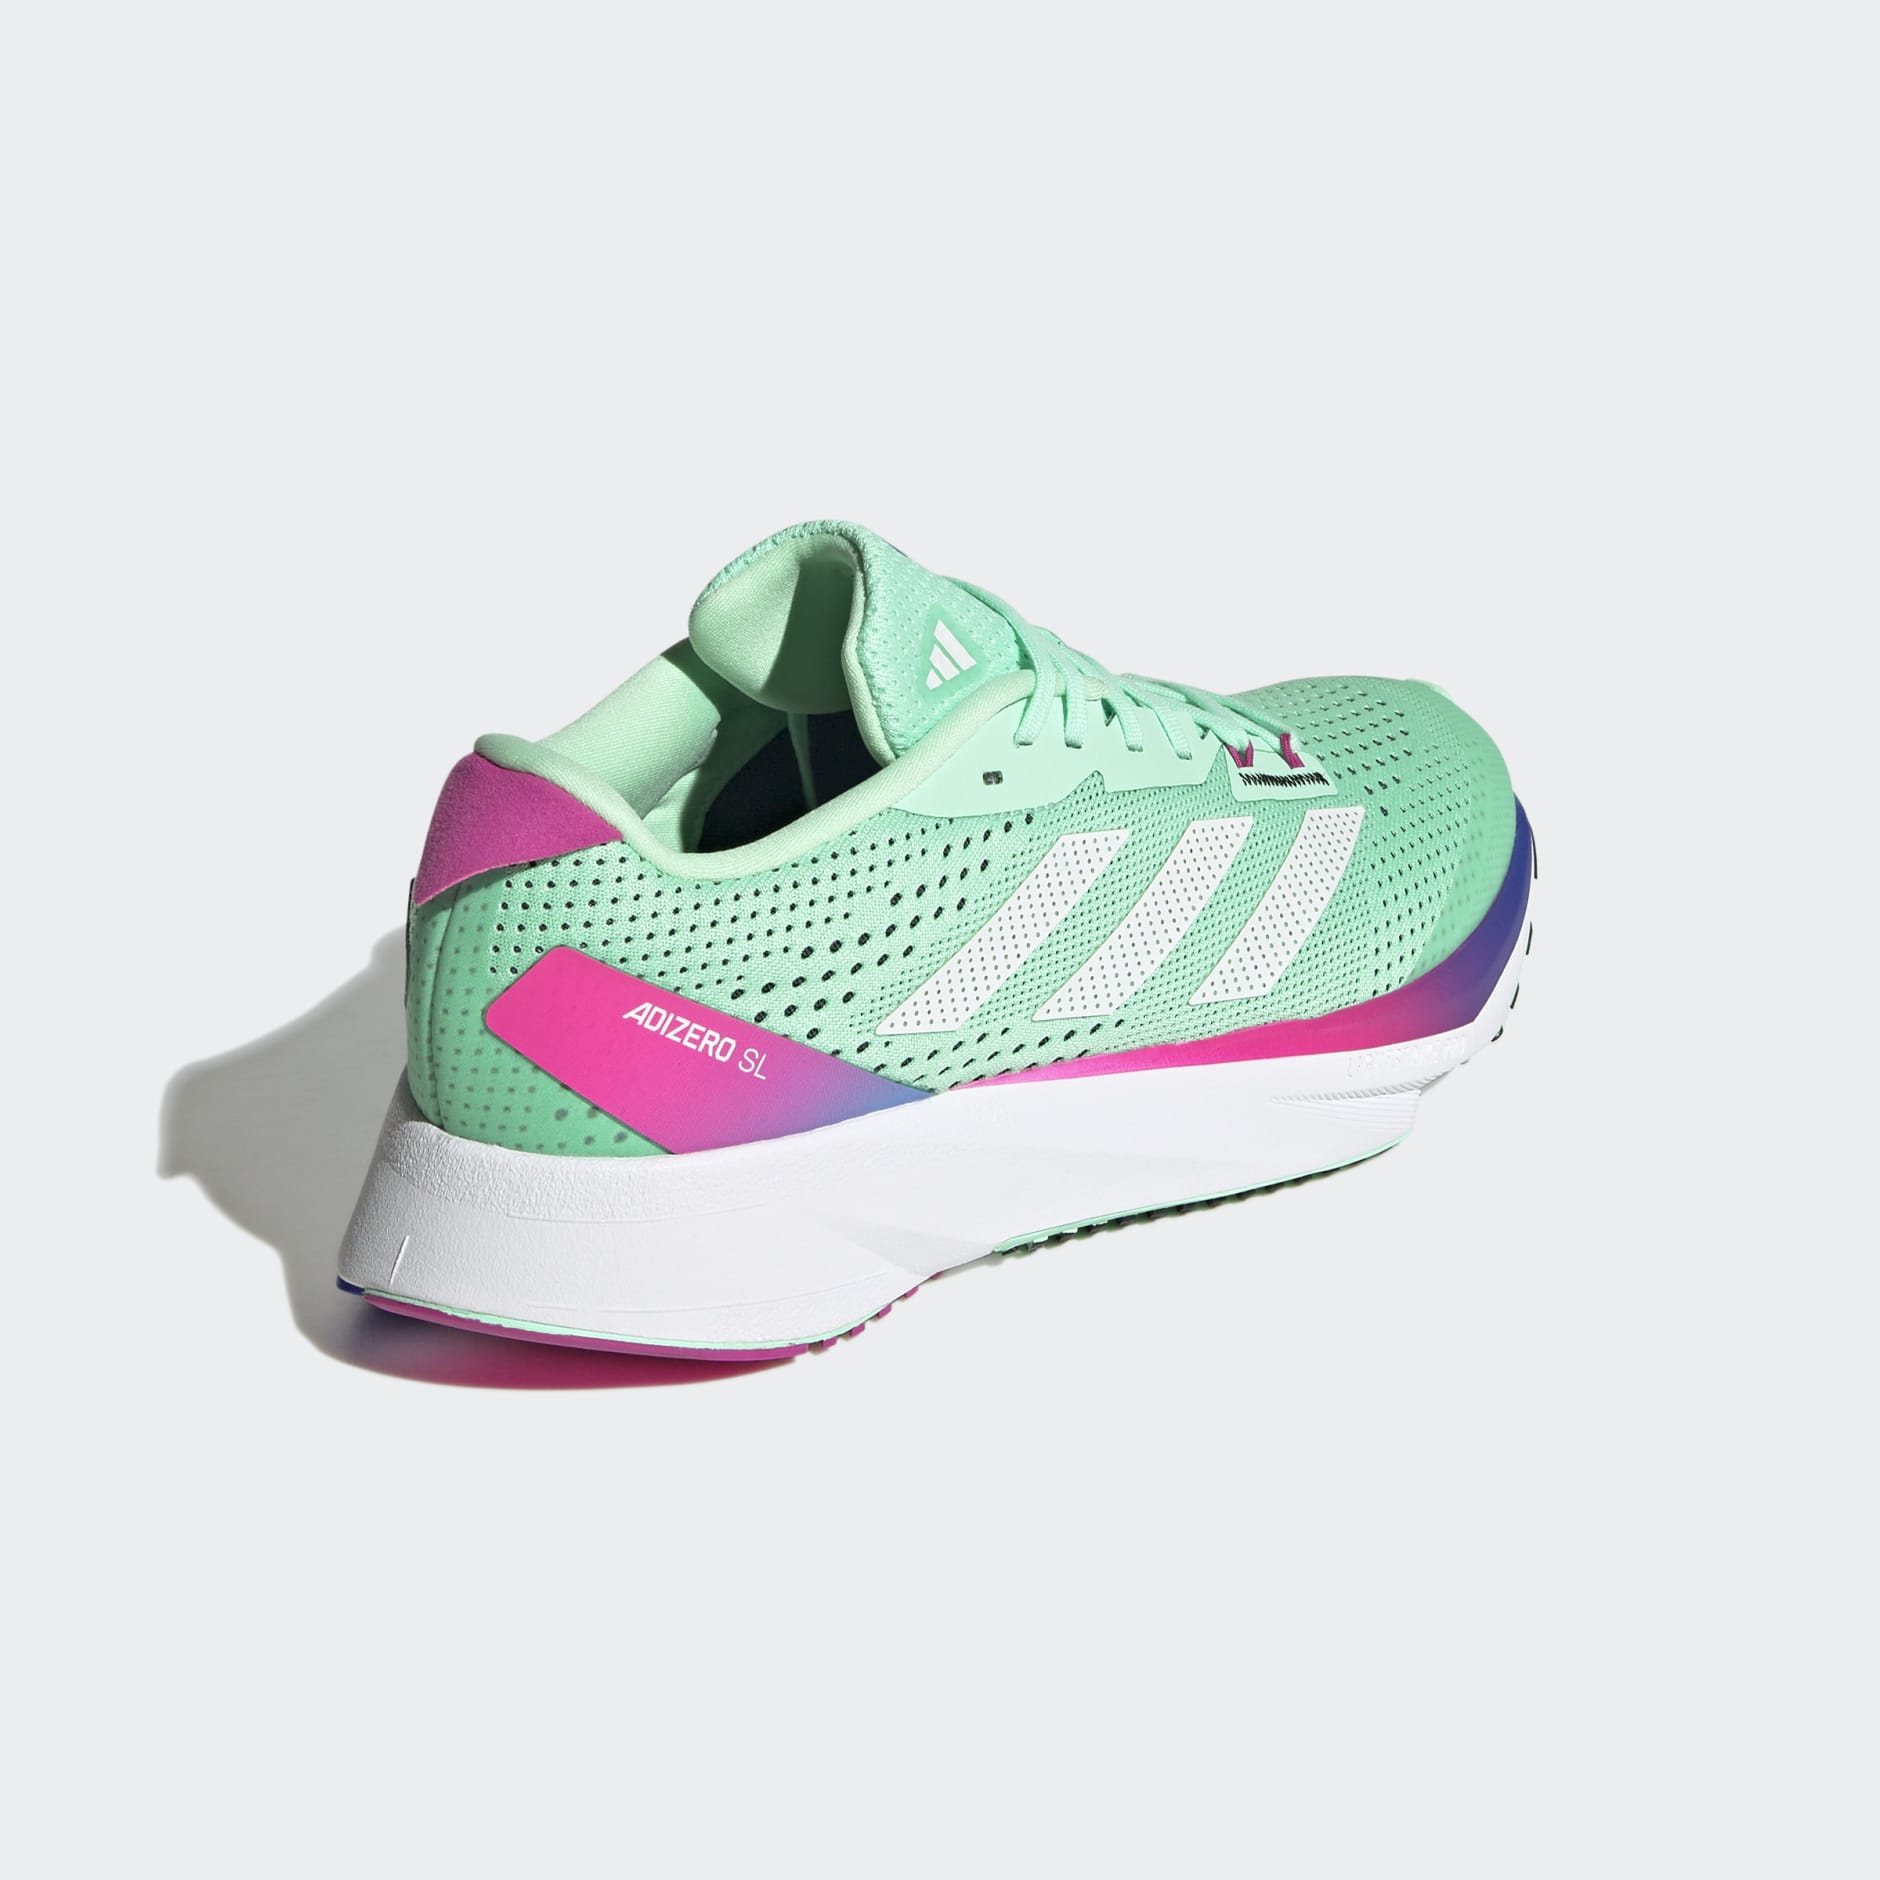 Adidas Adizero Sl Running Shoes